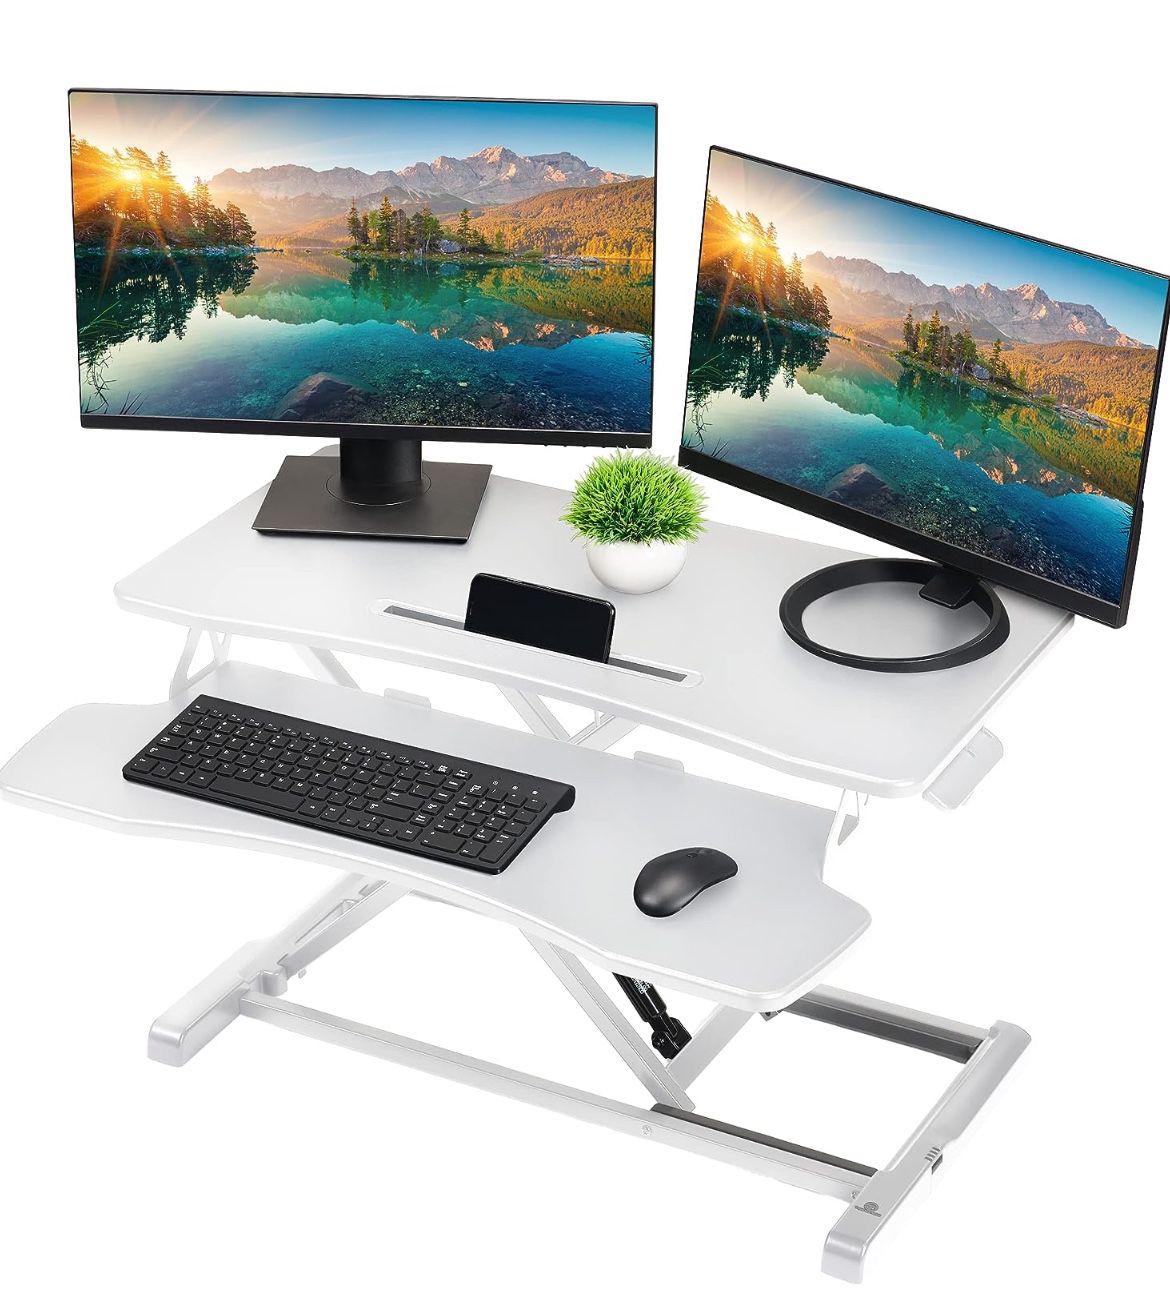 TechOrbits Standing Desk Converter - 37 Inch Adjustable Sit to Stand Up Desk Workstation, MDF Wood, Ergonomic Desk Riser with Keyboard Tray, Desktop R